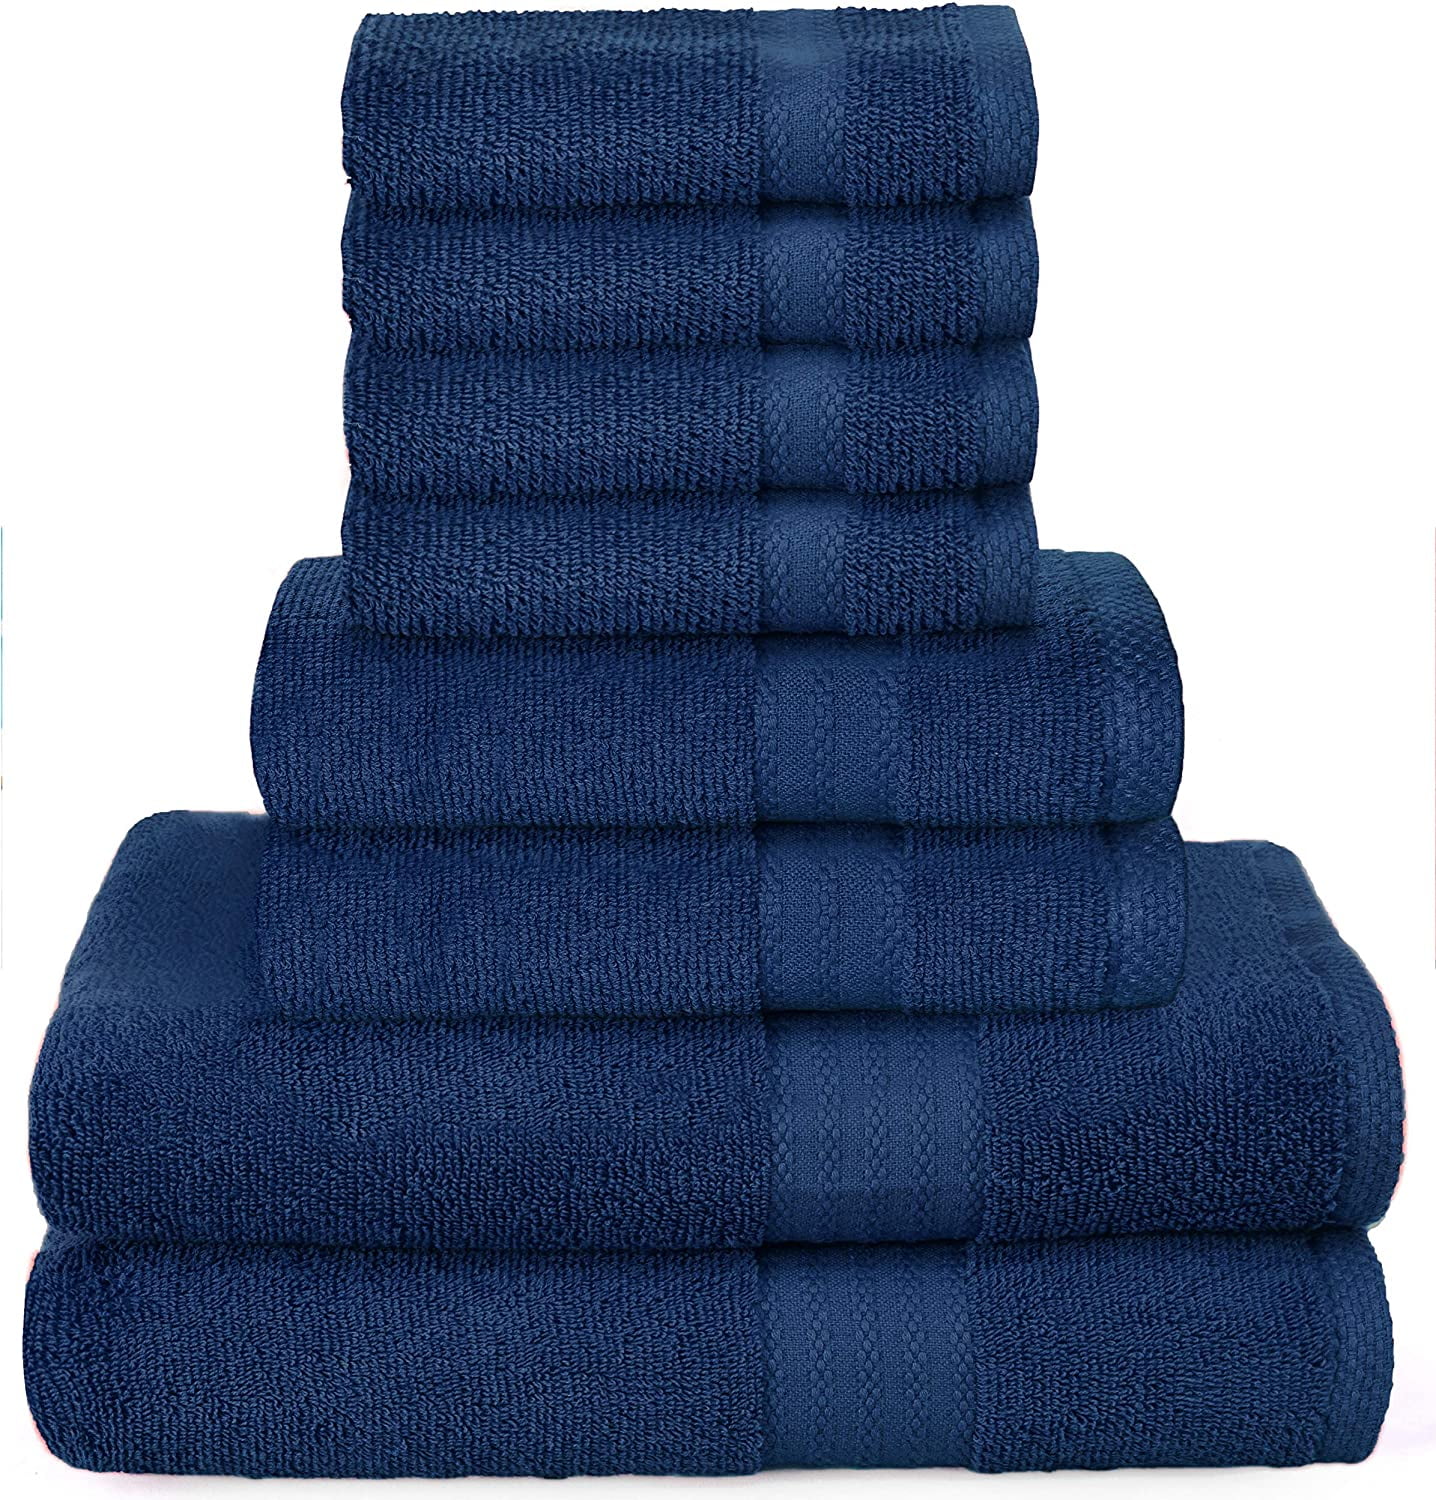 Extra Large Oversized Vibrant Sea Blue Towel Set - Highly